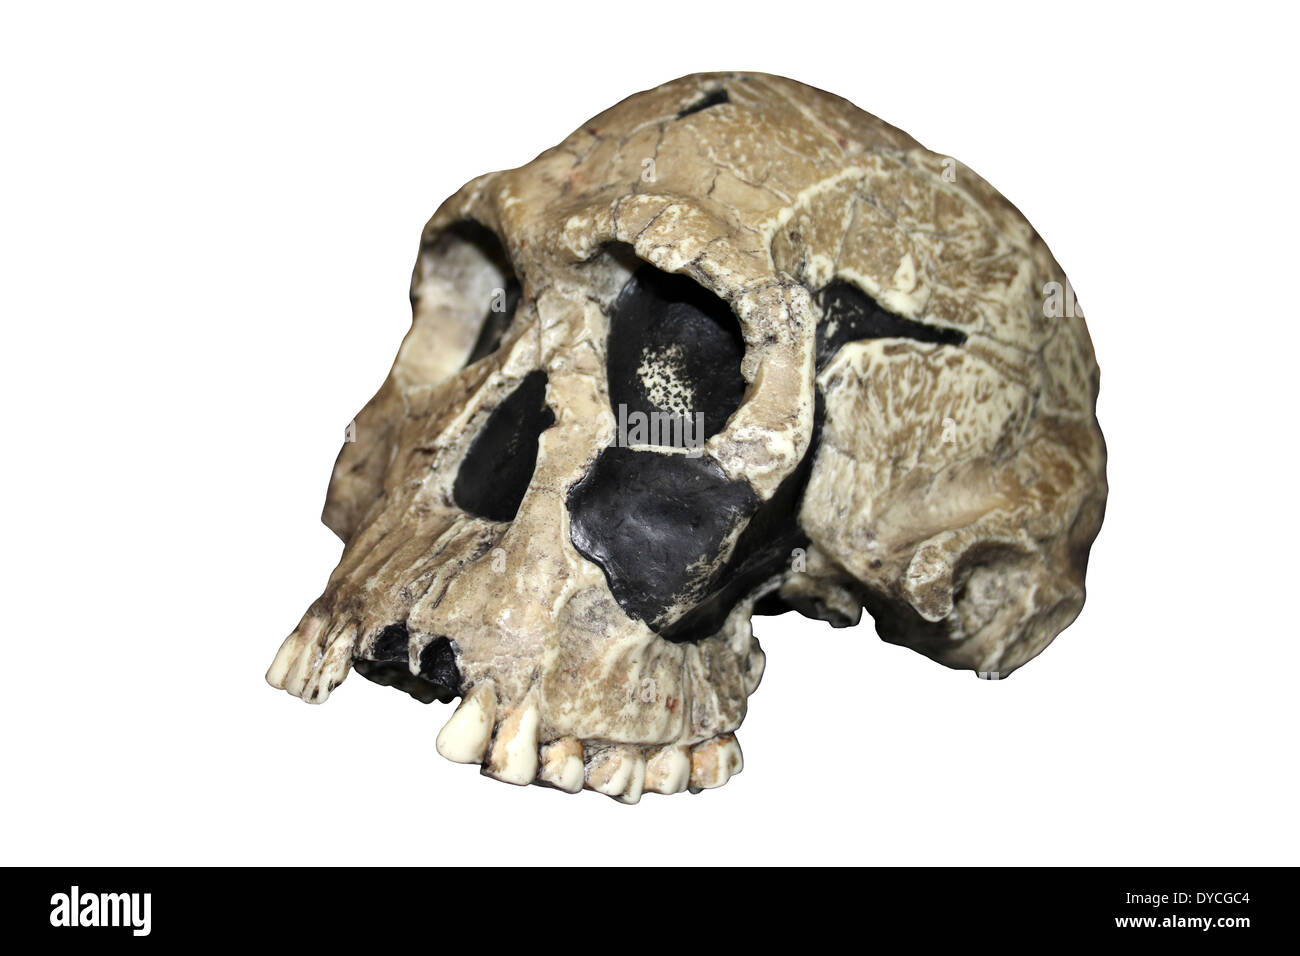 Replica Homo habilis Skull KNM ER 1813 Stock Photo: 68503124 - Alamy